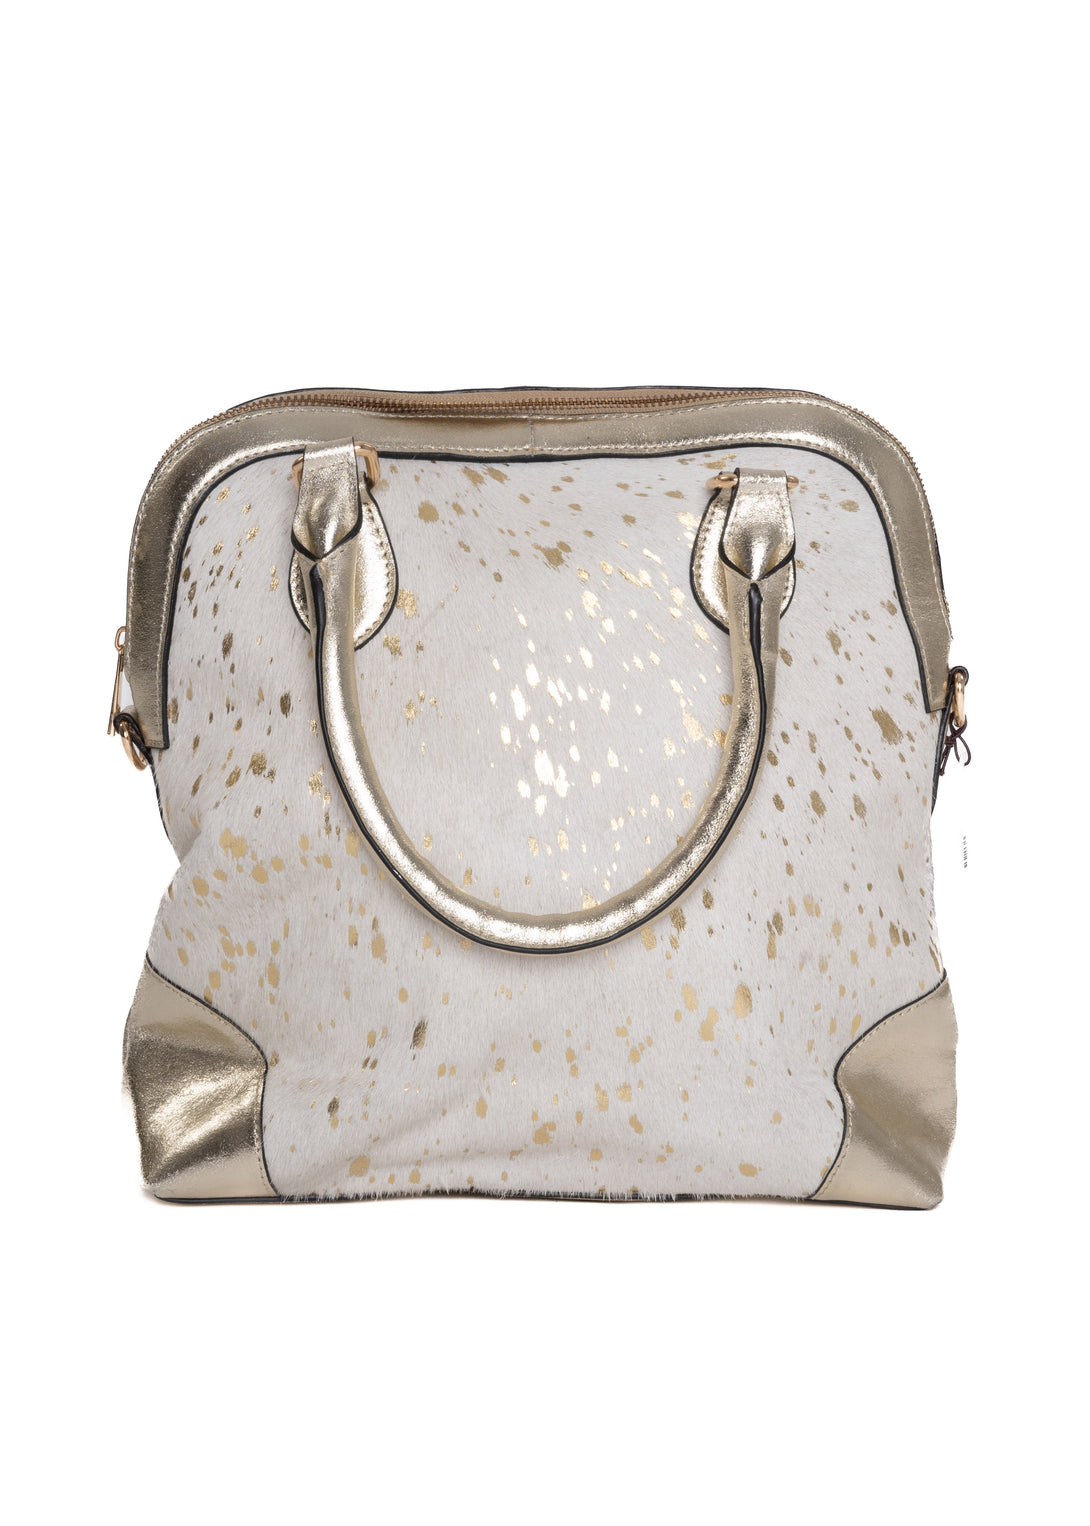 Pilot Handbag in Gold - Imagine Fashion